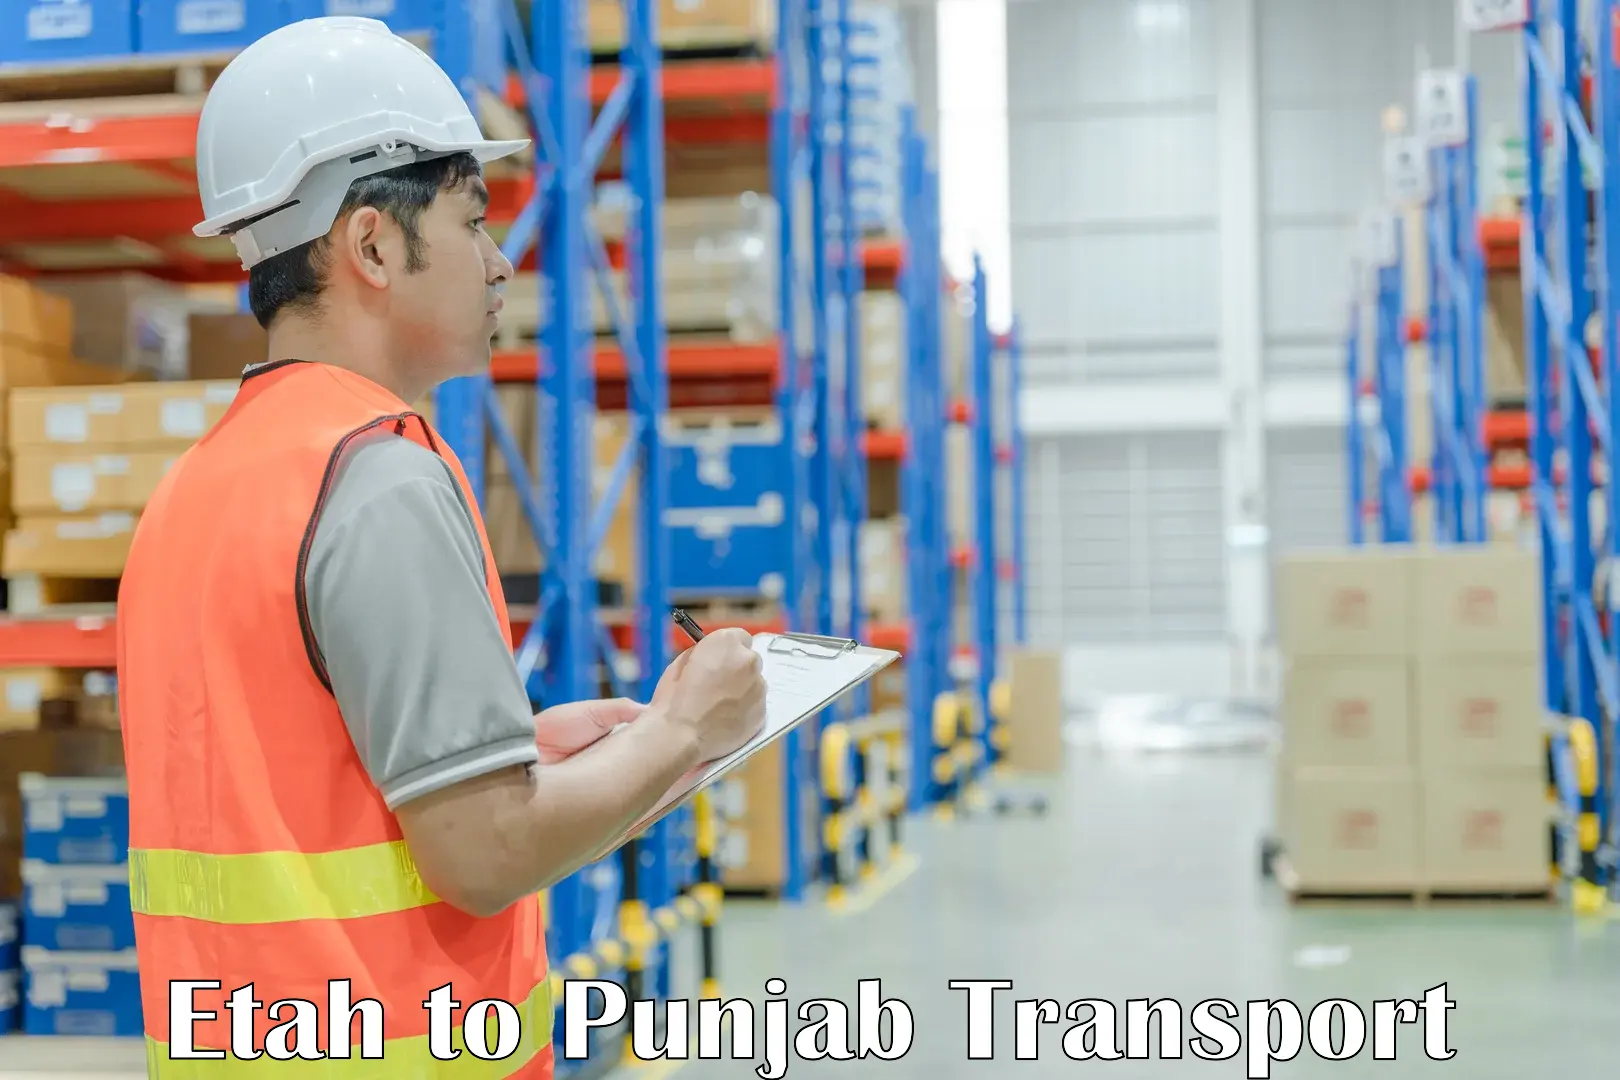 Vehicle transport services in Etah to Punjab